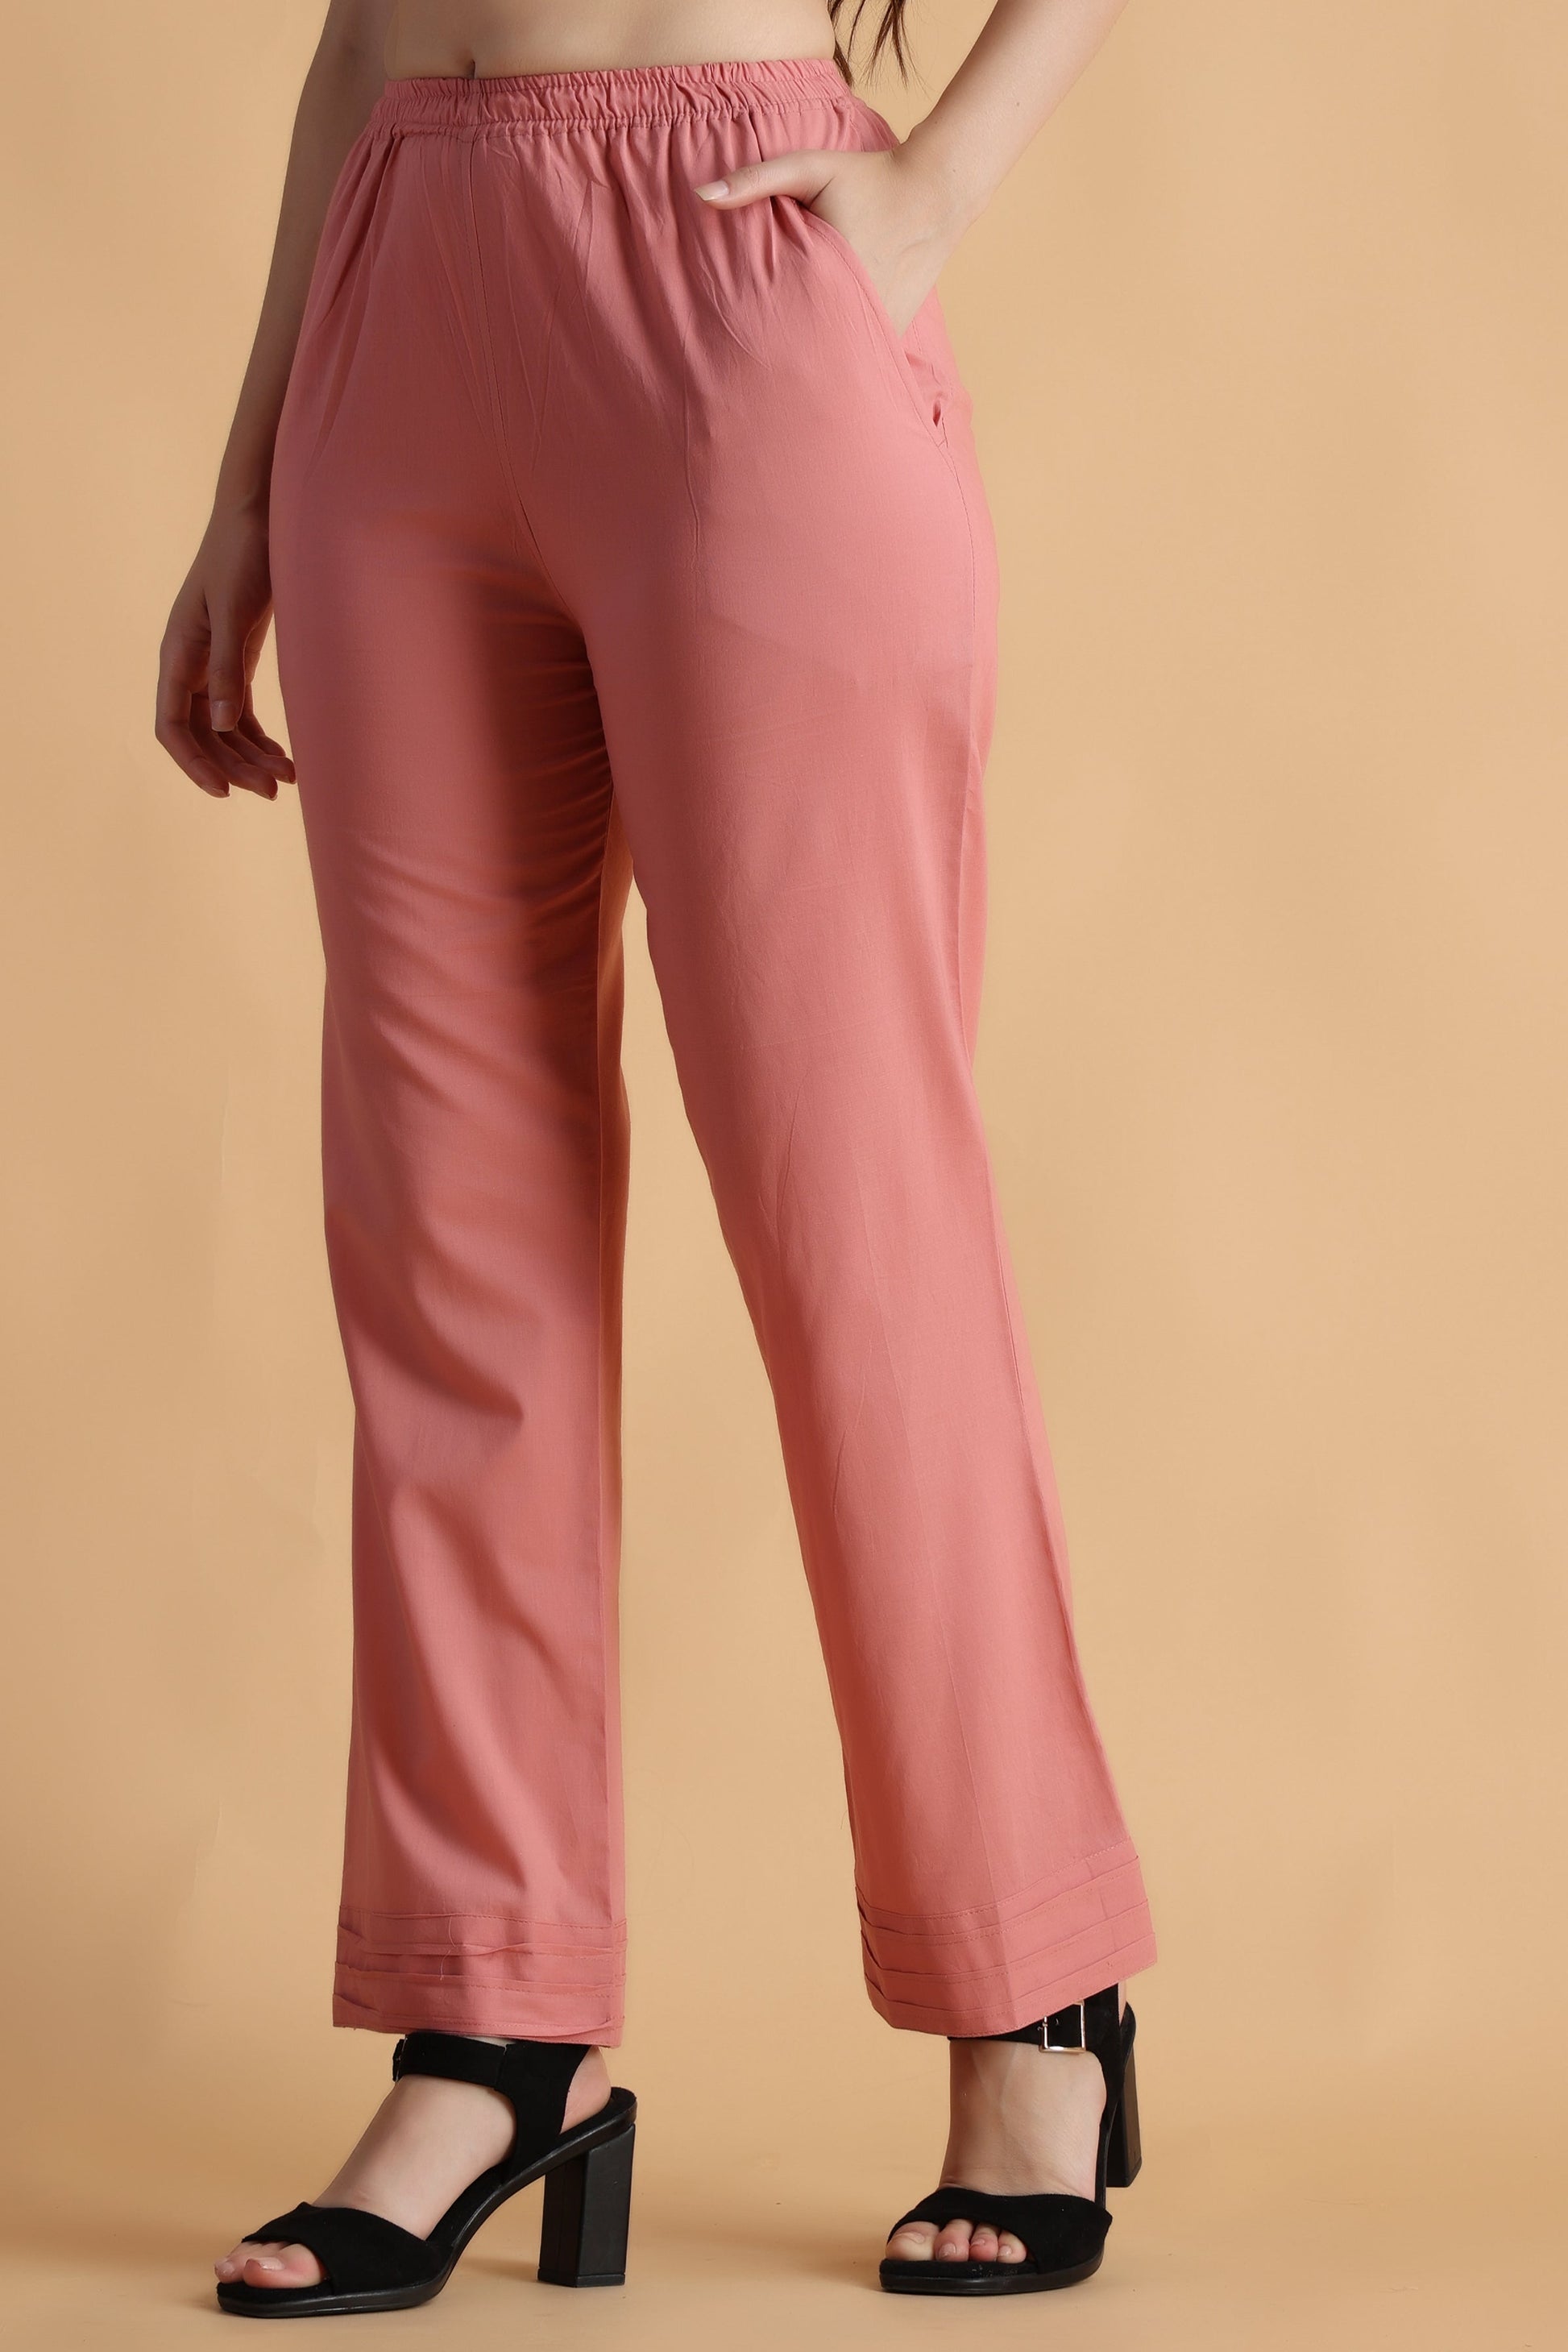 Buy Plus Size Palazzo Pants & Plus Size Women's Pants - Apella